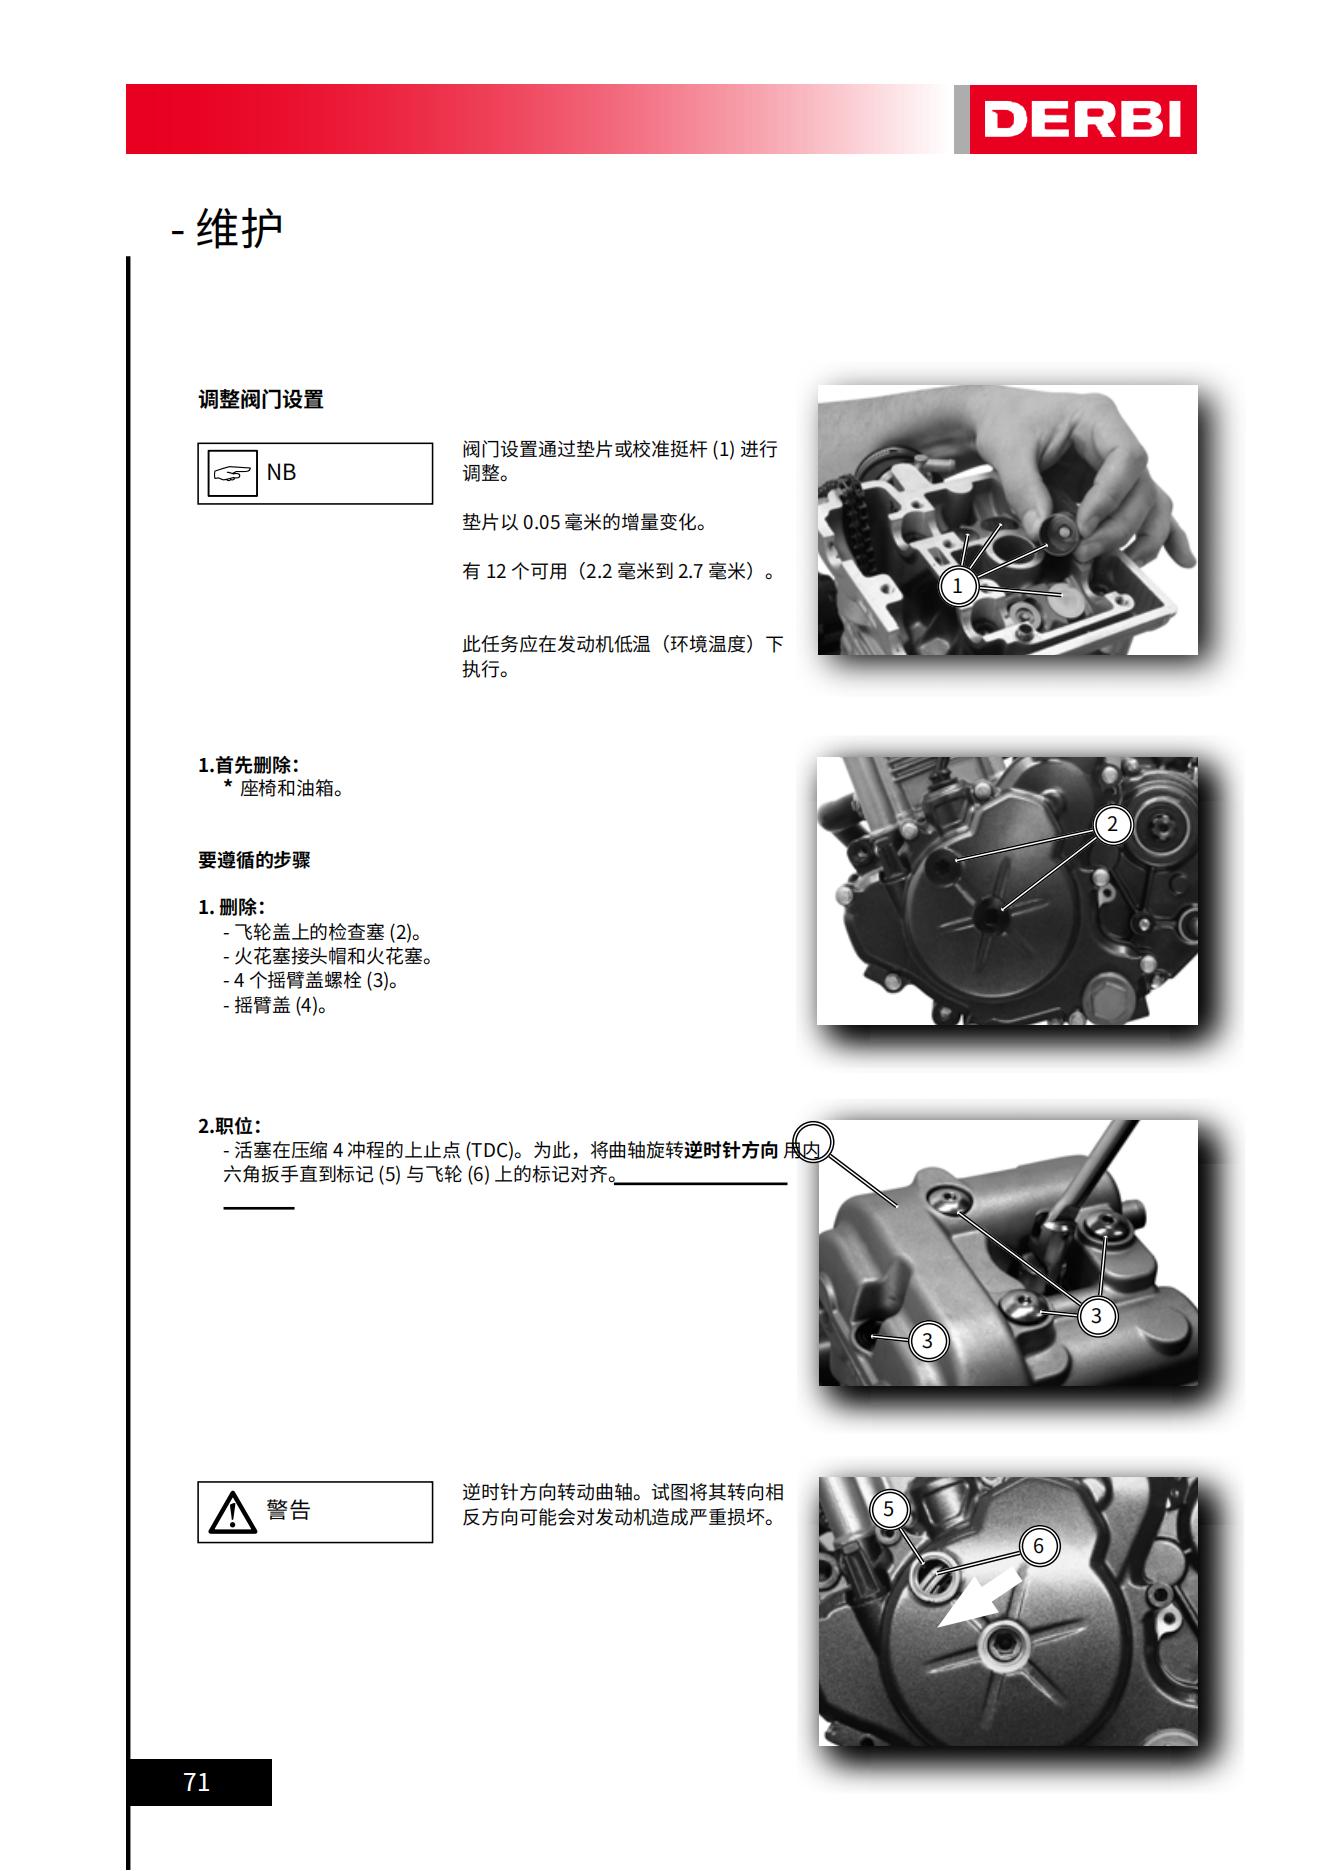 简体中文阿普利亚2009阿普利亚125gpr150GPR125-150通用维修手册插图2